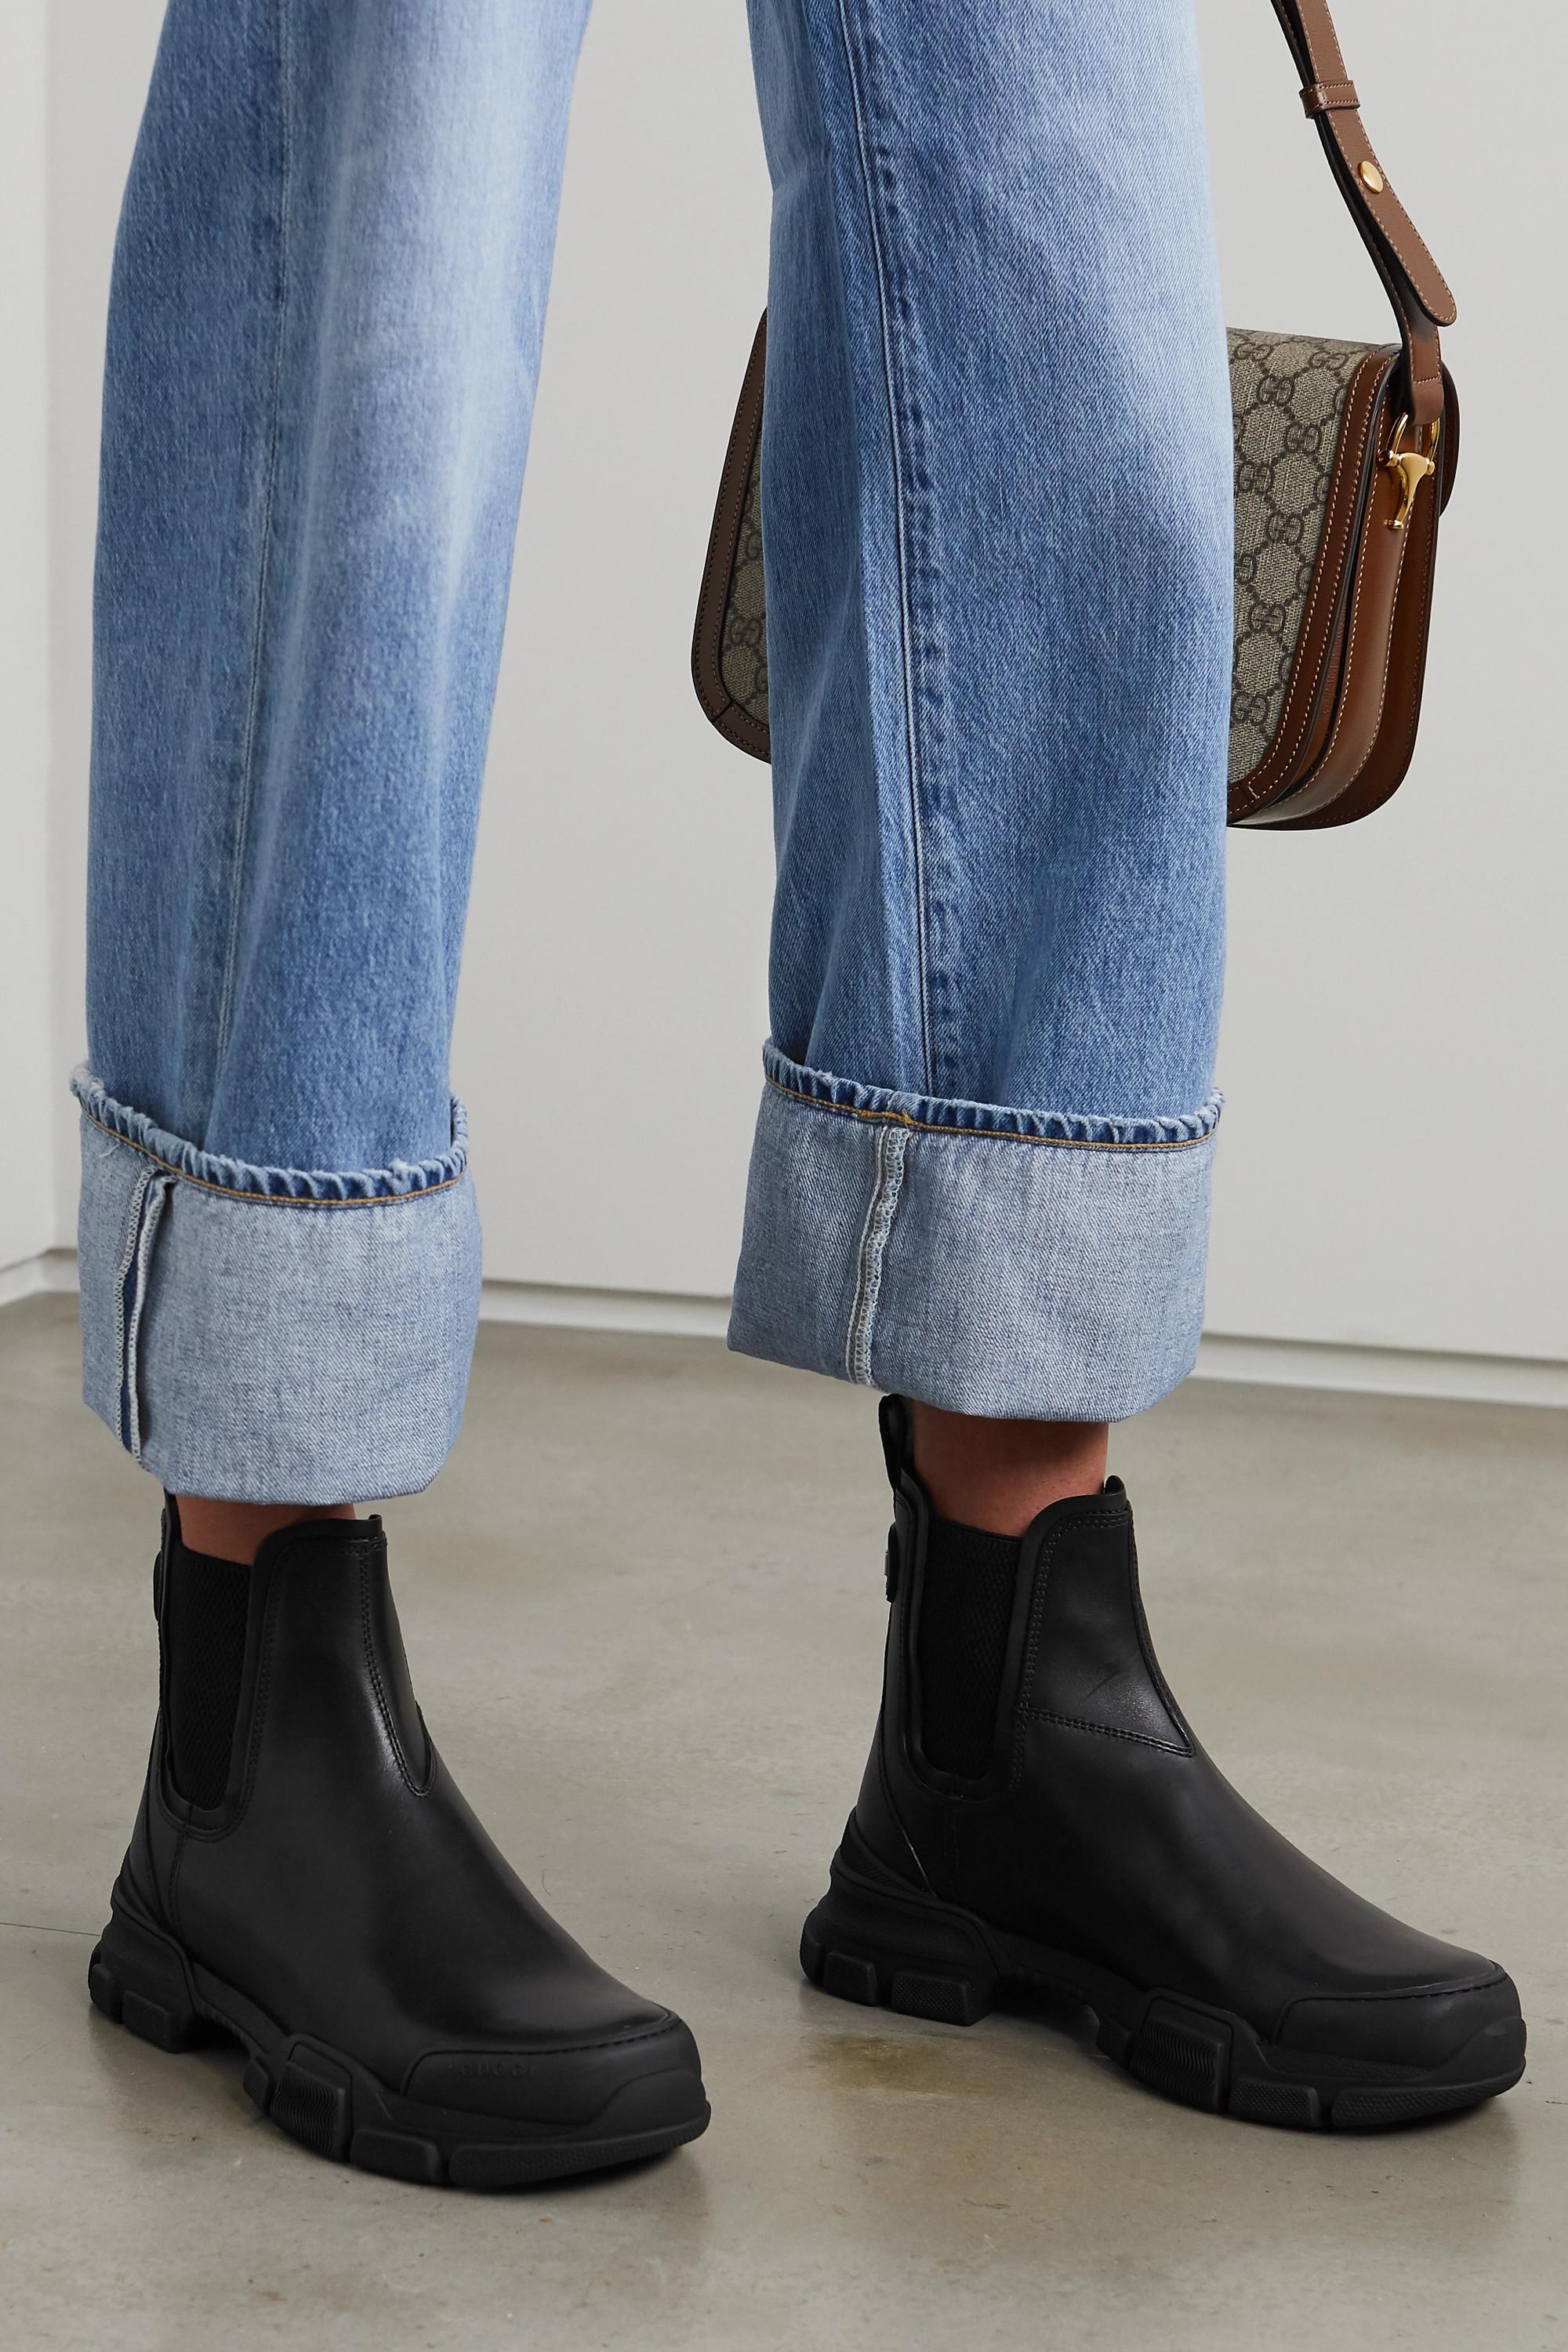 Gucci Leather Leon Chelsea Boots in Nero,Nero (Black) - Save 40% | Lyst  Australia